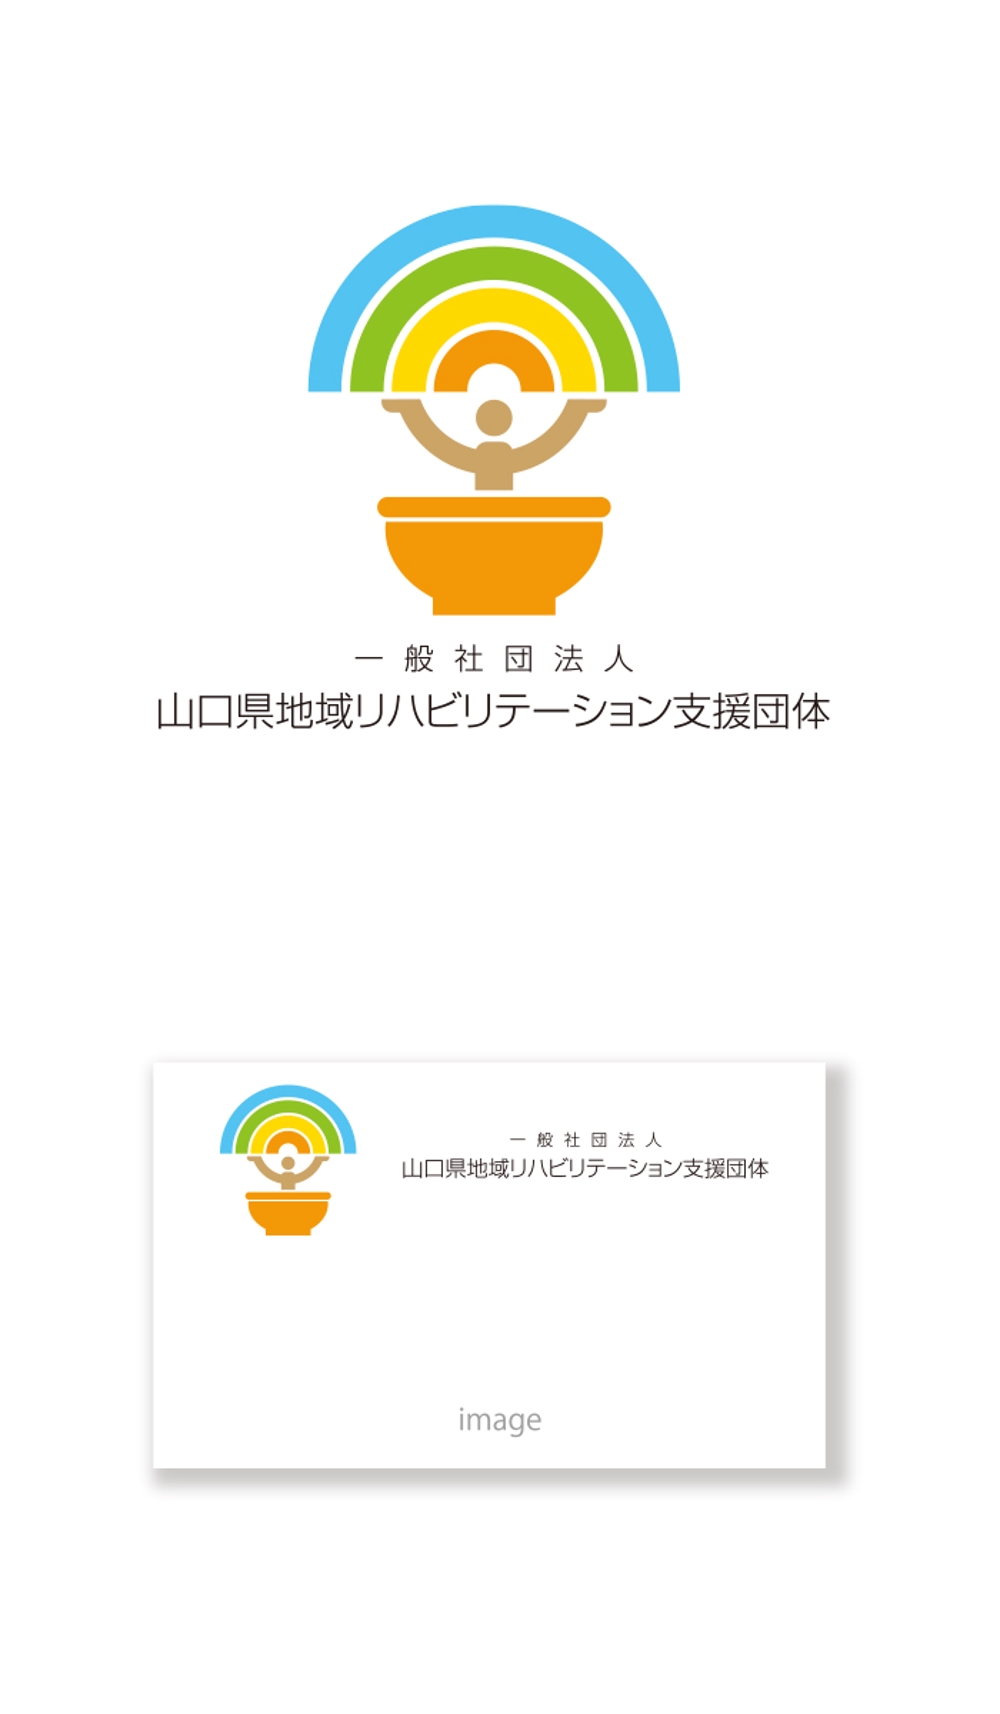 山口県地域リハビリテーション  logo_serve.jpg